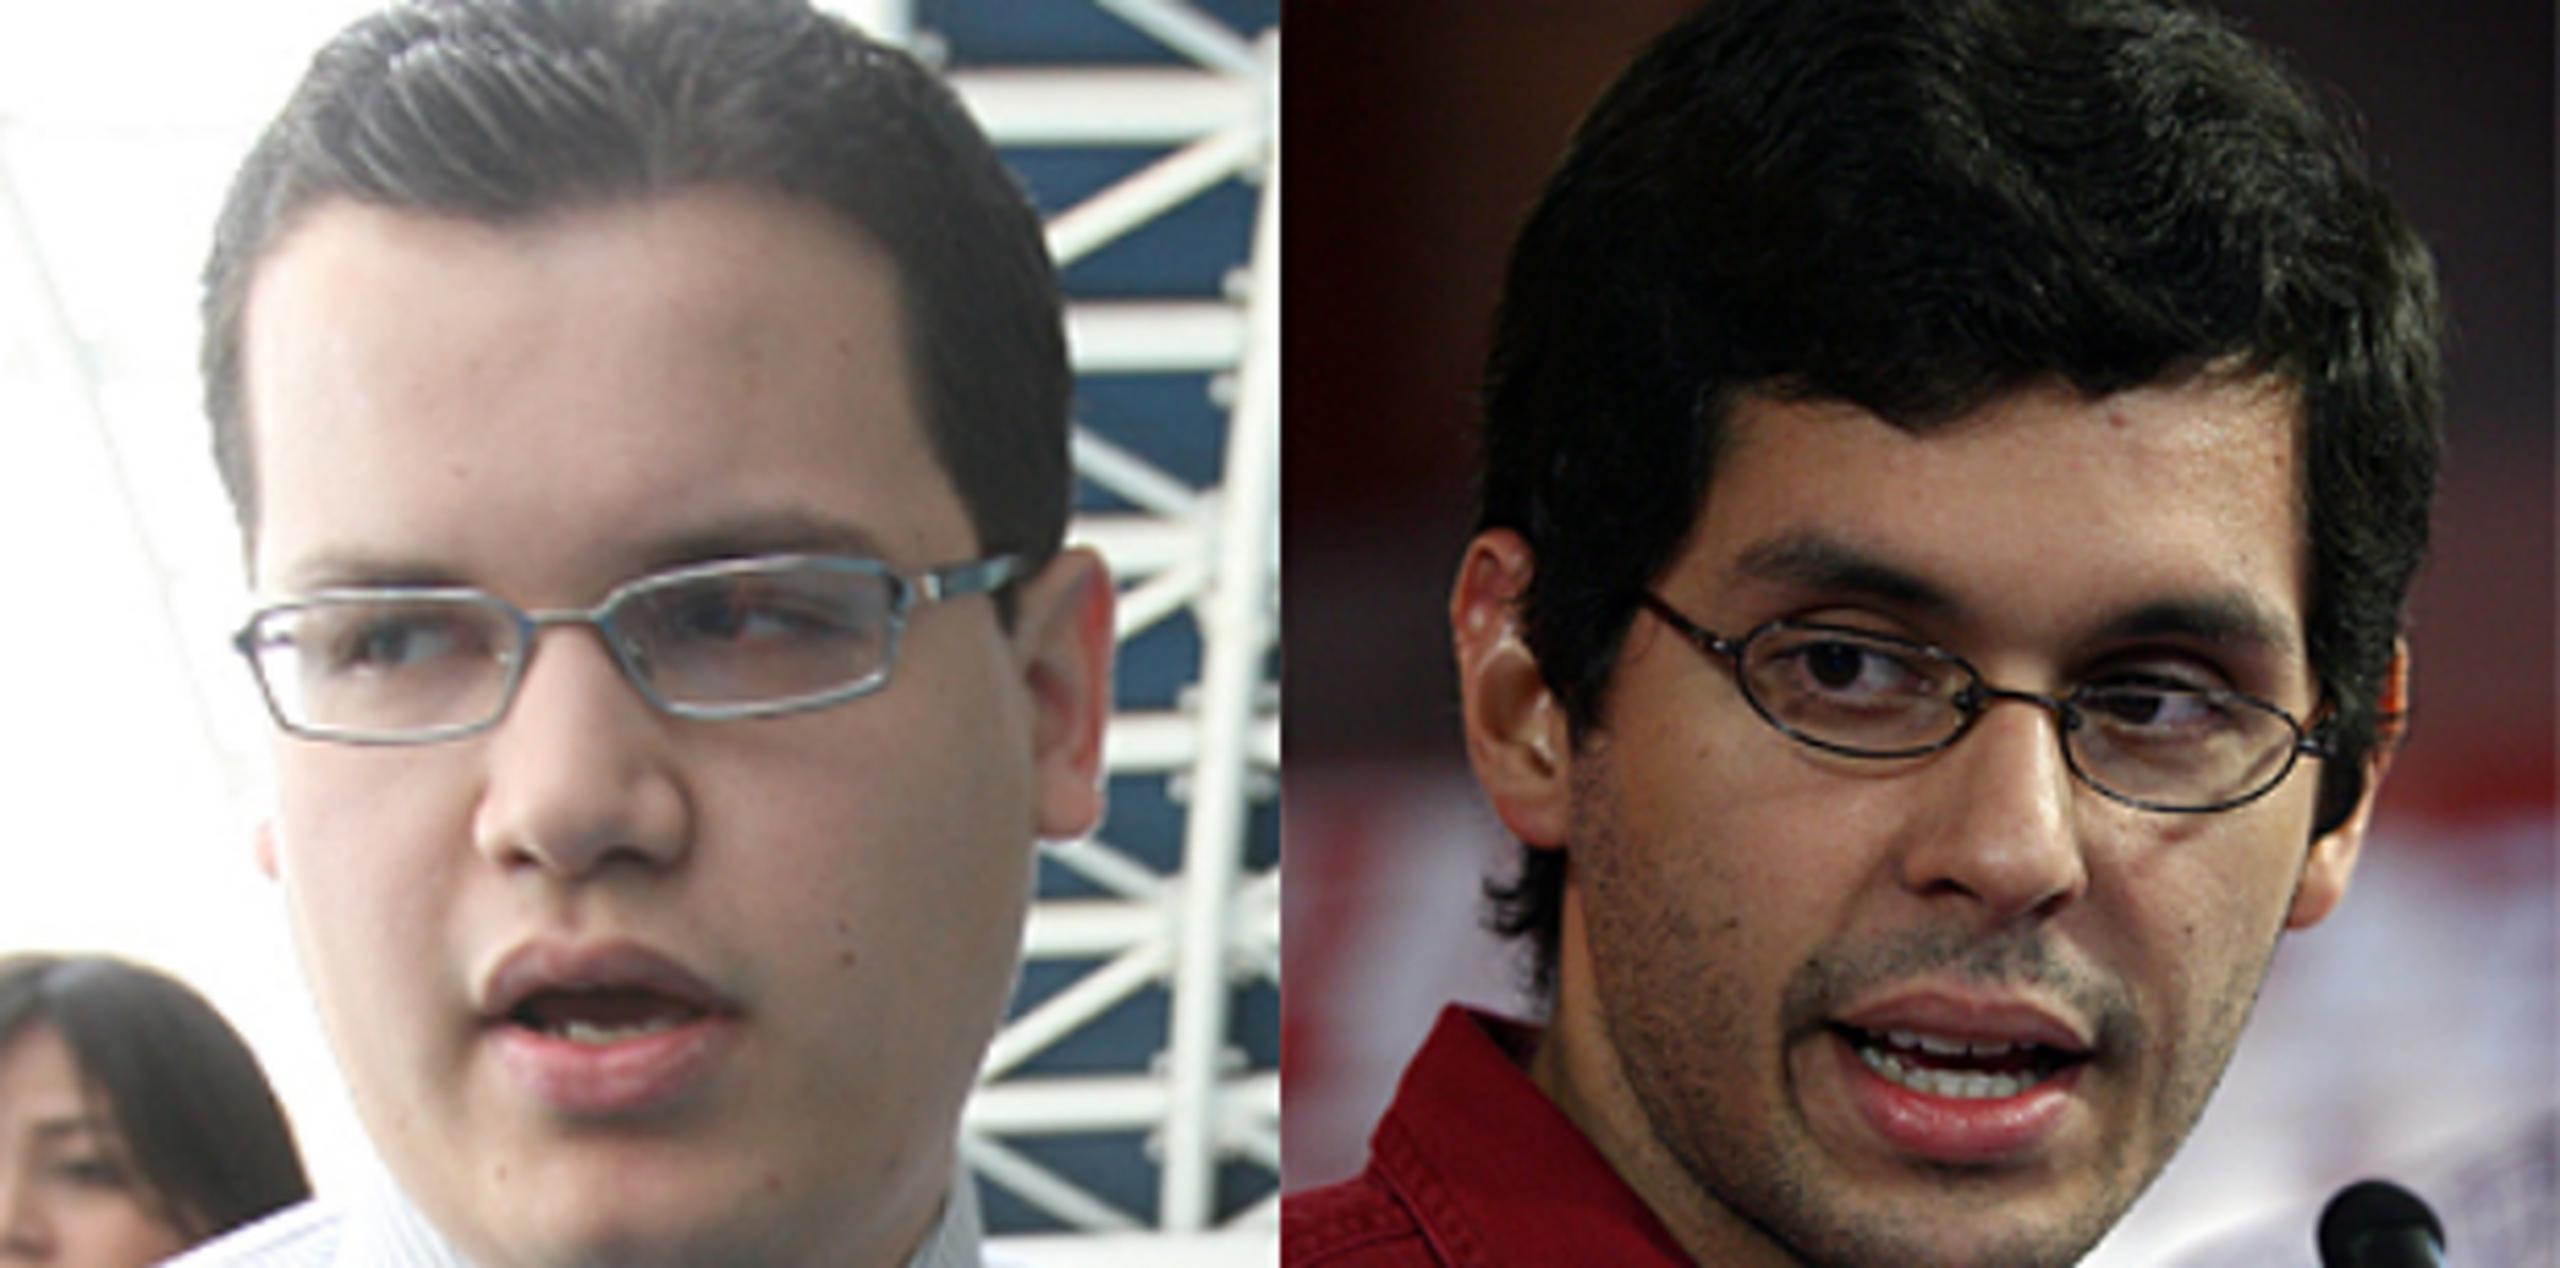 Desde marzo de 2011, Luis Herrero (izquierda) y Ricardo Alfaro (derecha), representan la imagen de García Padilla "online", fortaleciendo así su presencia en la red de los 140 caracteres donde aparece como @agarciapadilla. (Archivo)